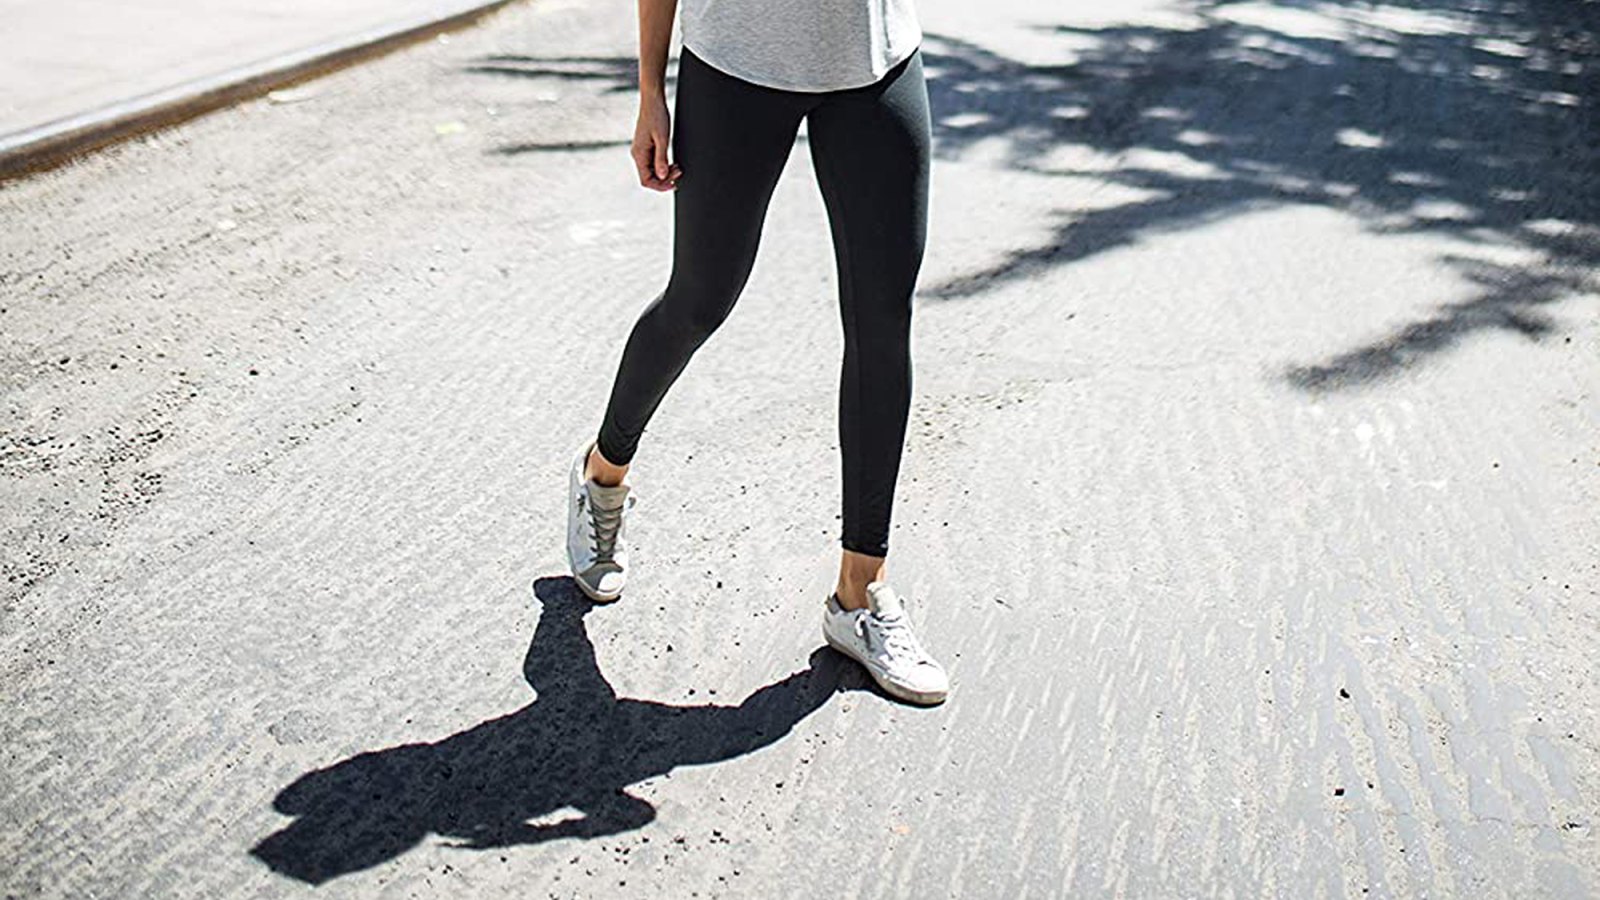 7 Pack Capri Leggings For Women, High Waisted Black Soft Workout Yoga Pants